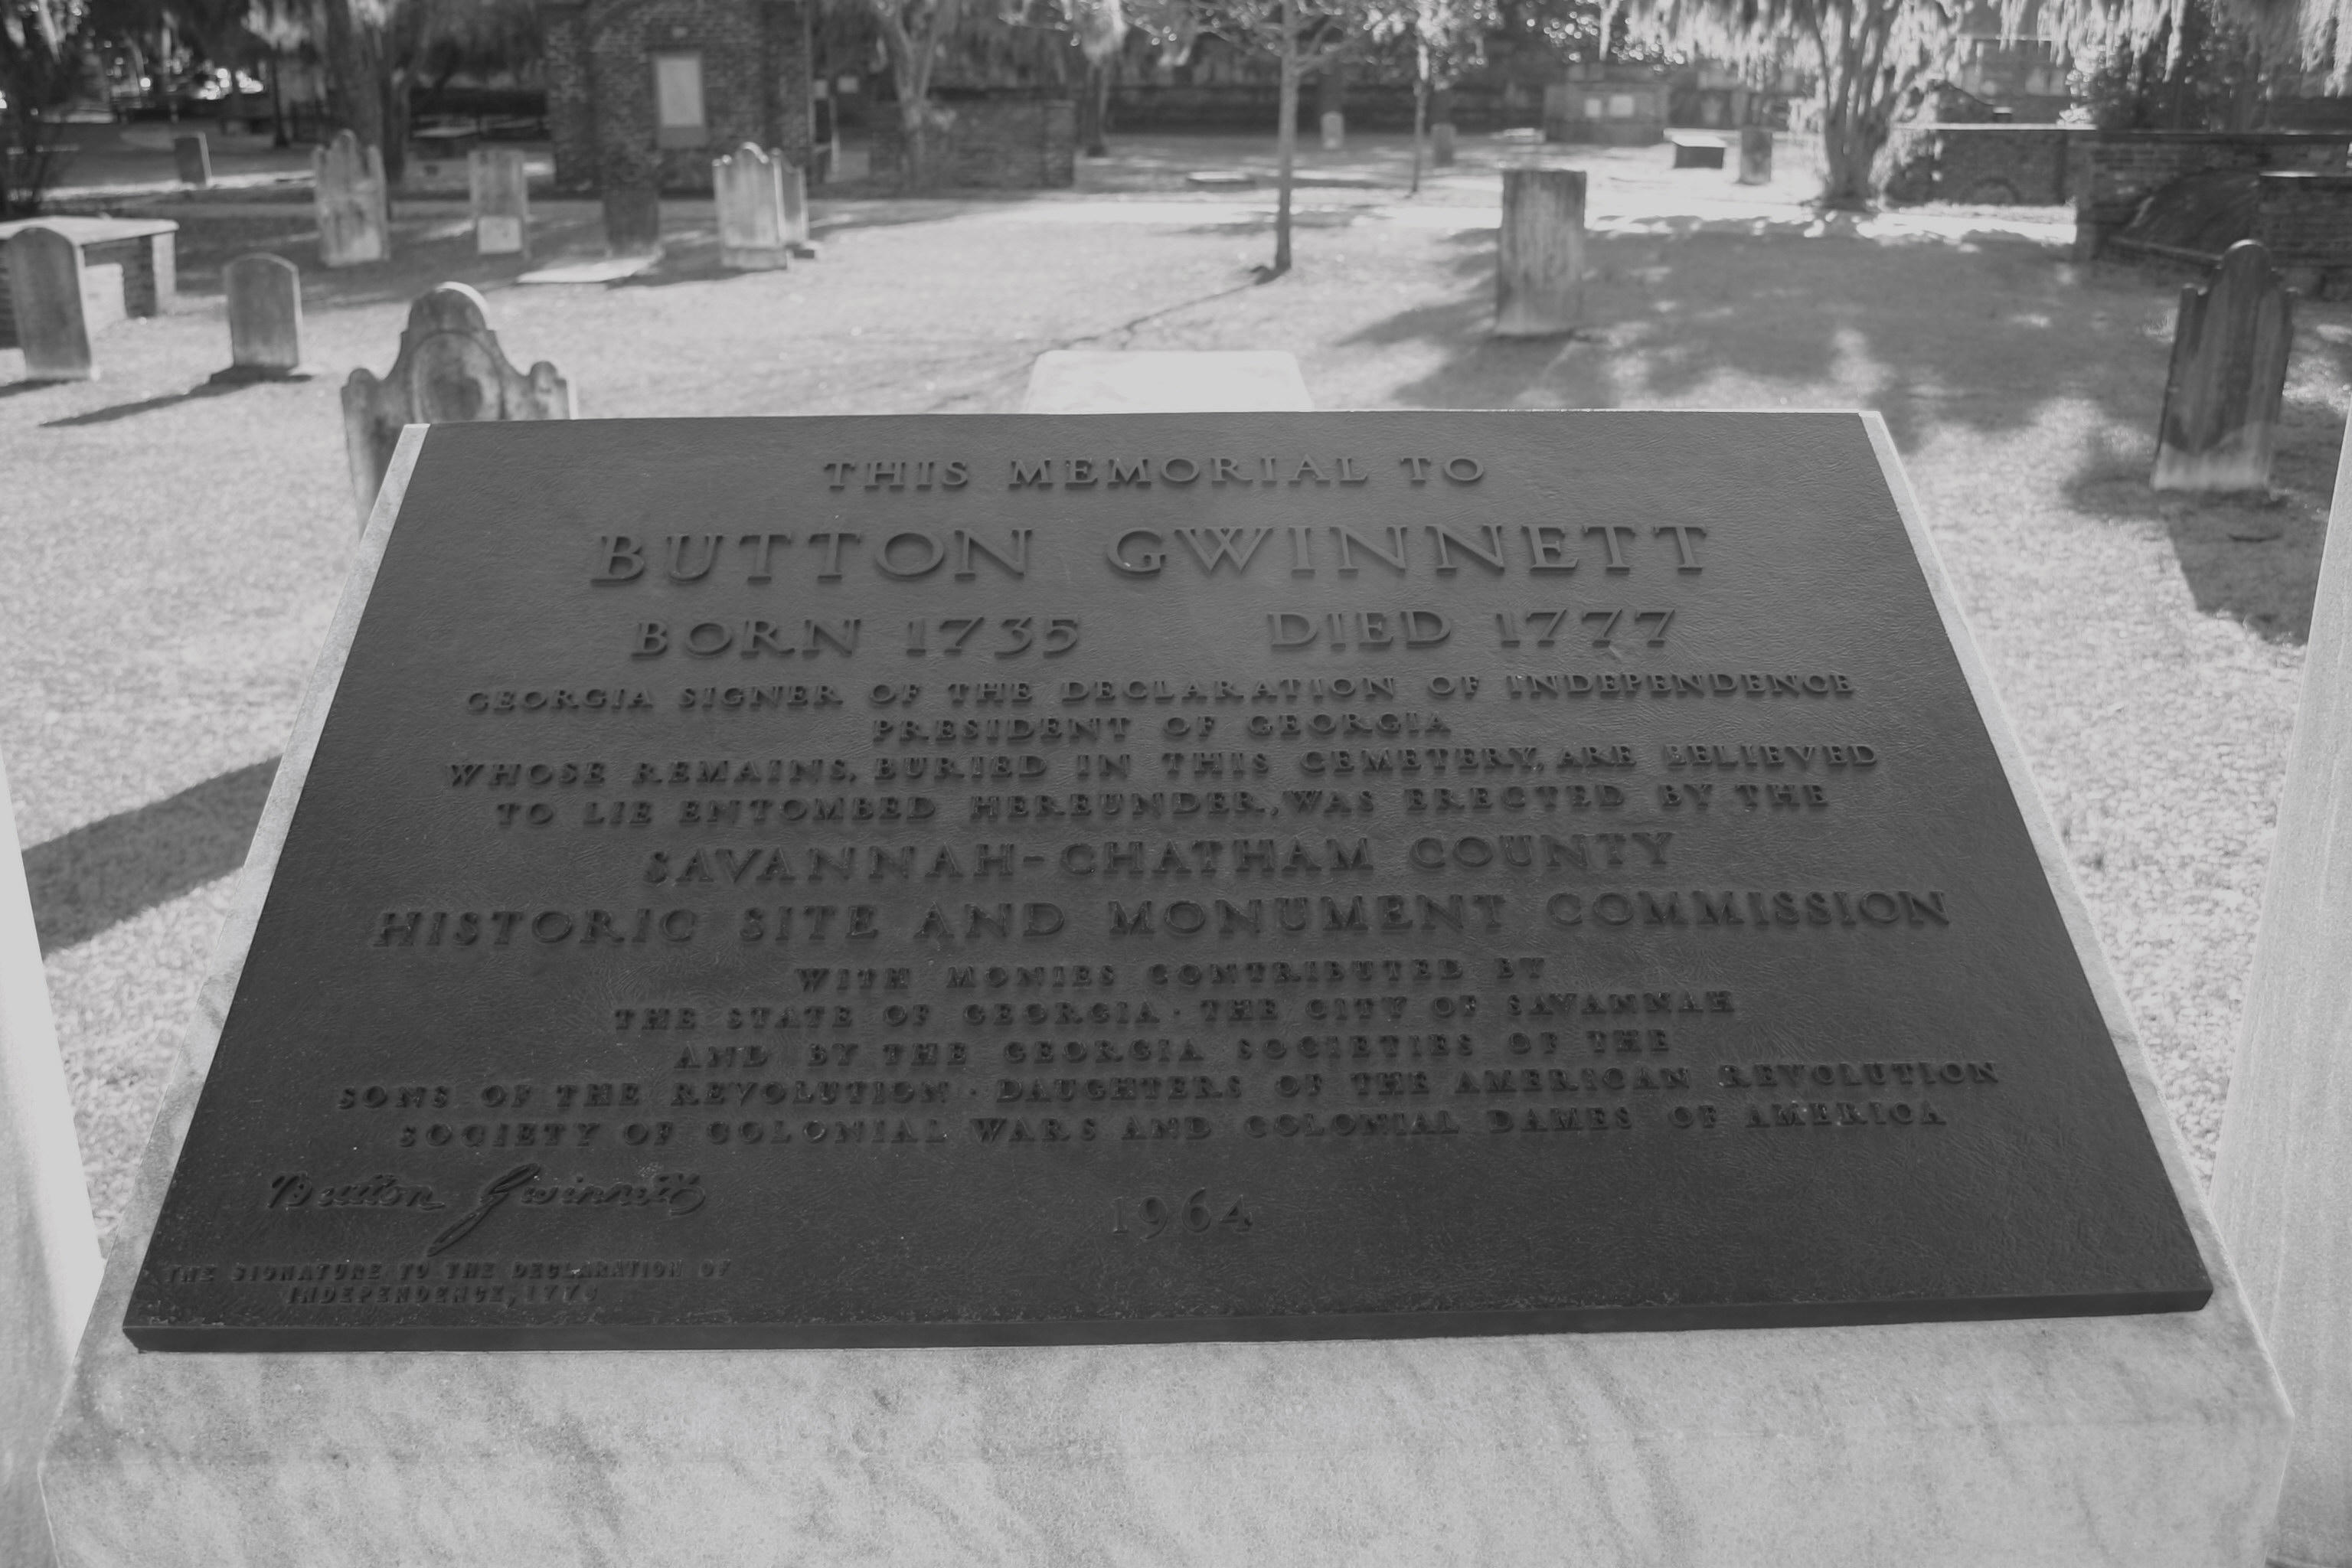 Button Gwinnett